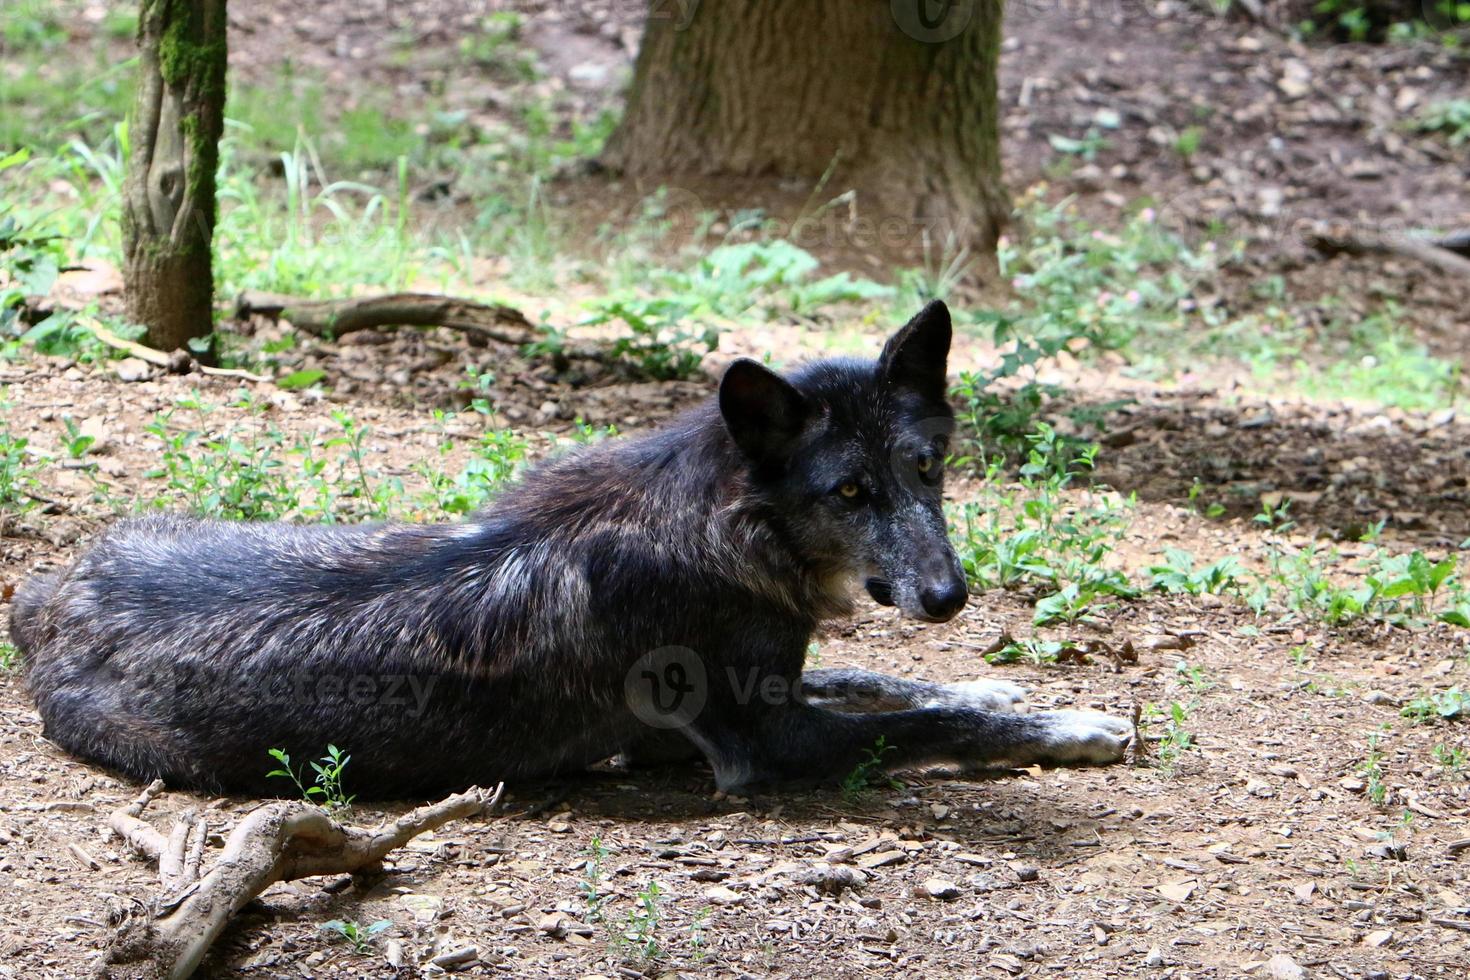 il piccolo lupo nero vive nello zoo foto